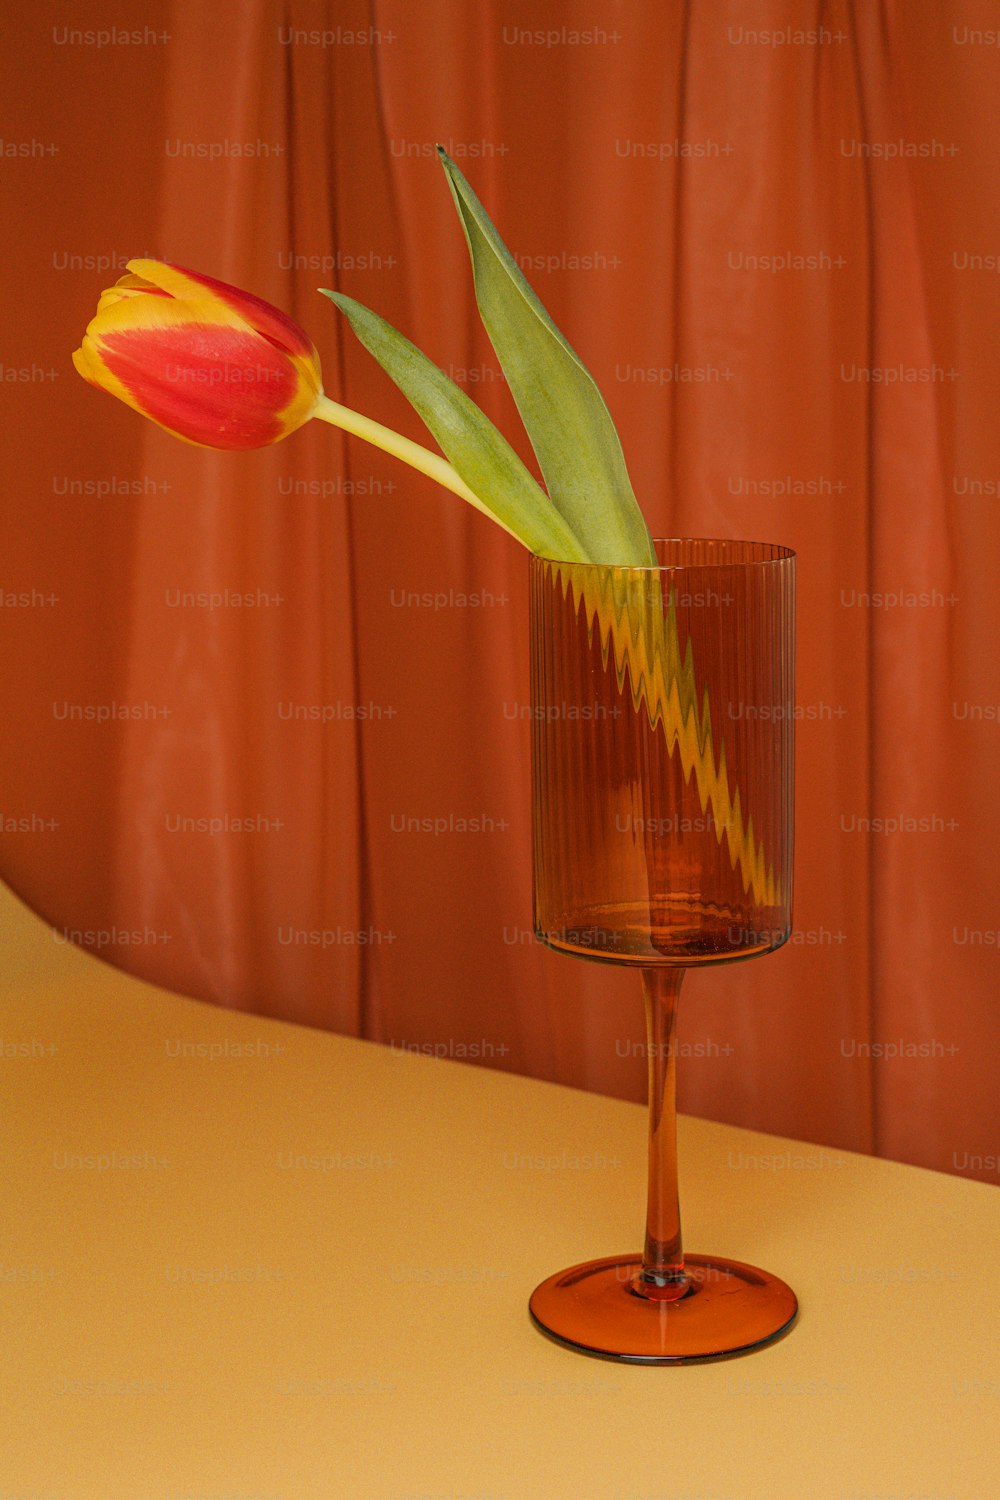 Una sola flor en un jarrón de vidrio sobre una mesa